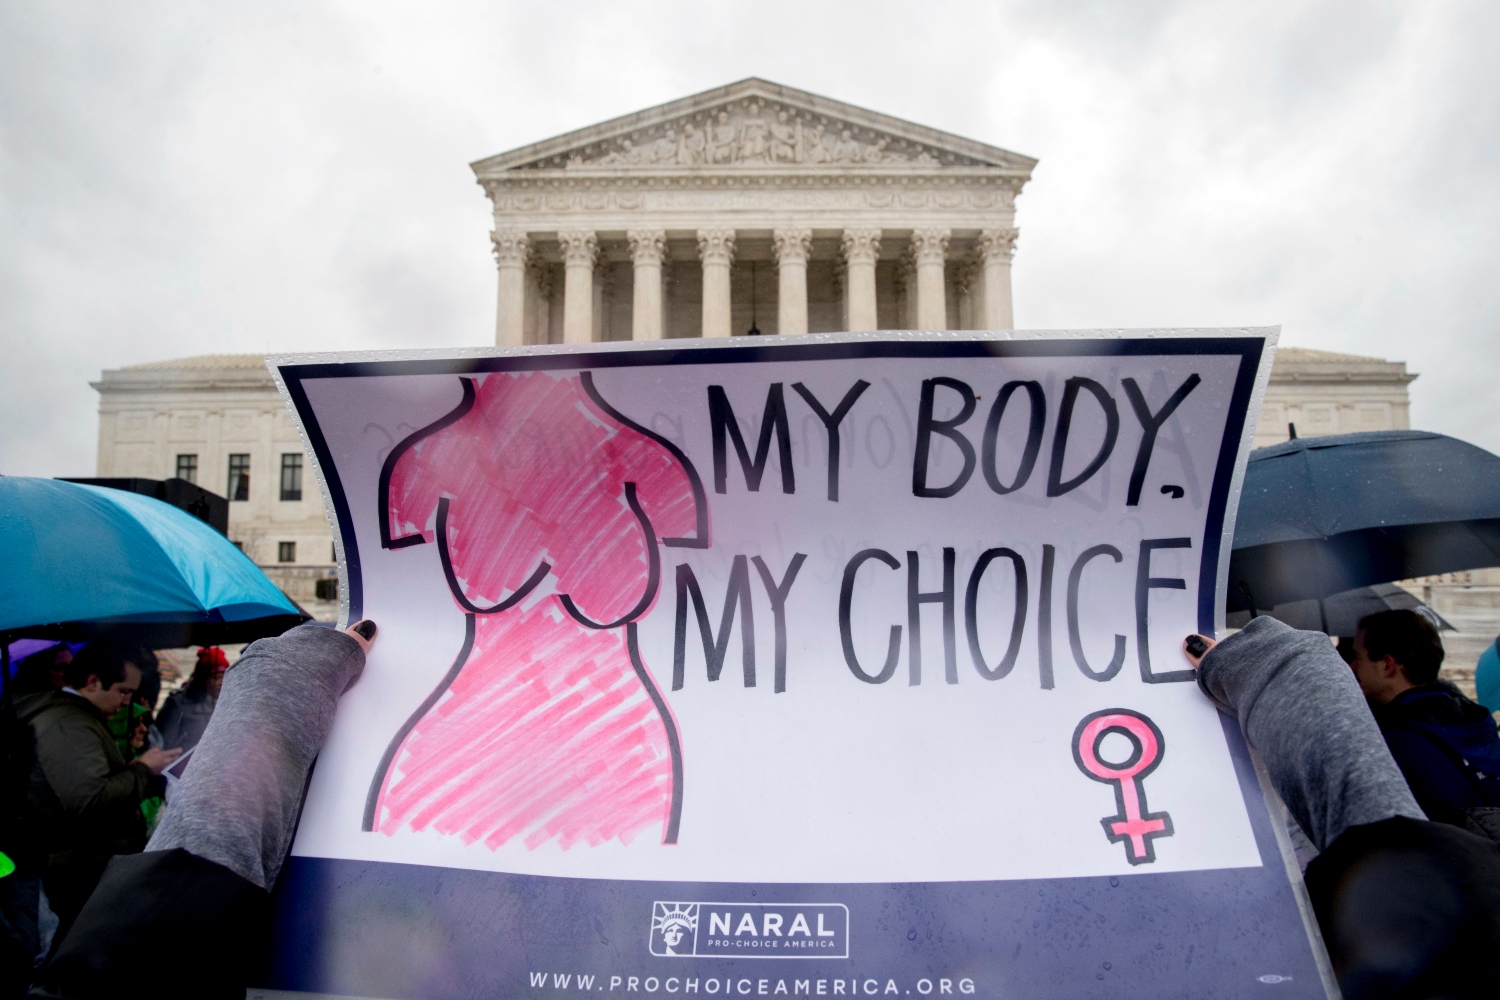 Στις ΗΠΑ μεγάλες εταιρείες πλέον αναγκάζονται να πάρουν θέση για το δικαίωμα στην άμβλωση